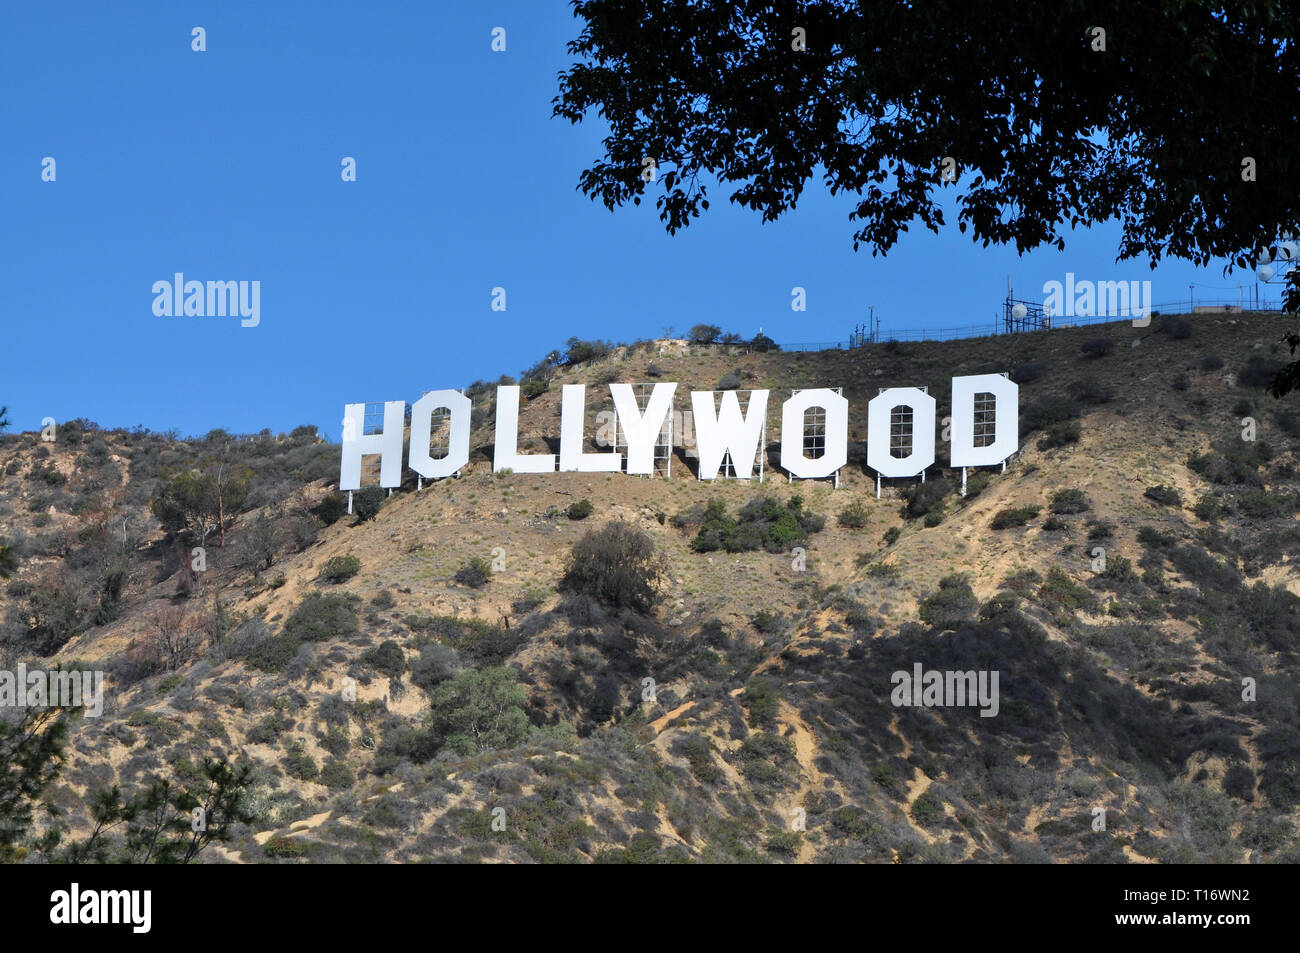 LOS ANGELES, VEREINIGTE STAATEN - 3 November 2017: Ein Bild des berühmten Hollywood Zeichen. Stockfoto